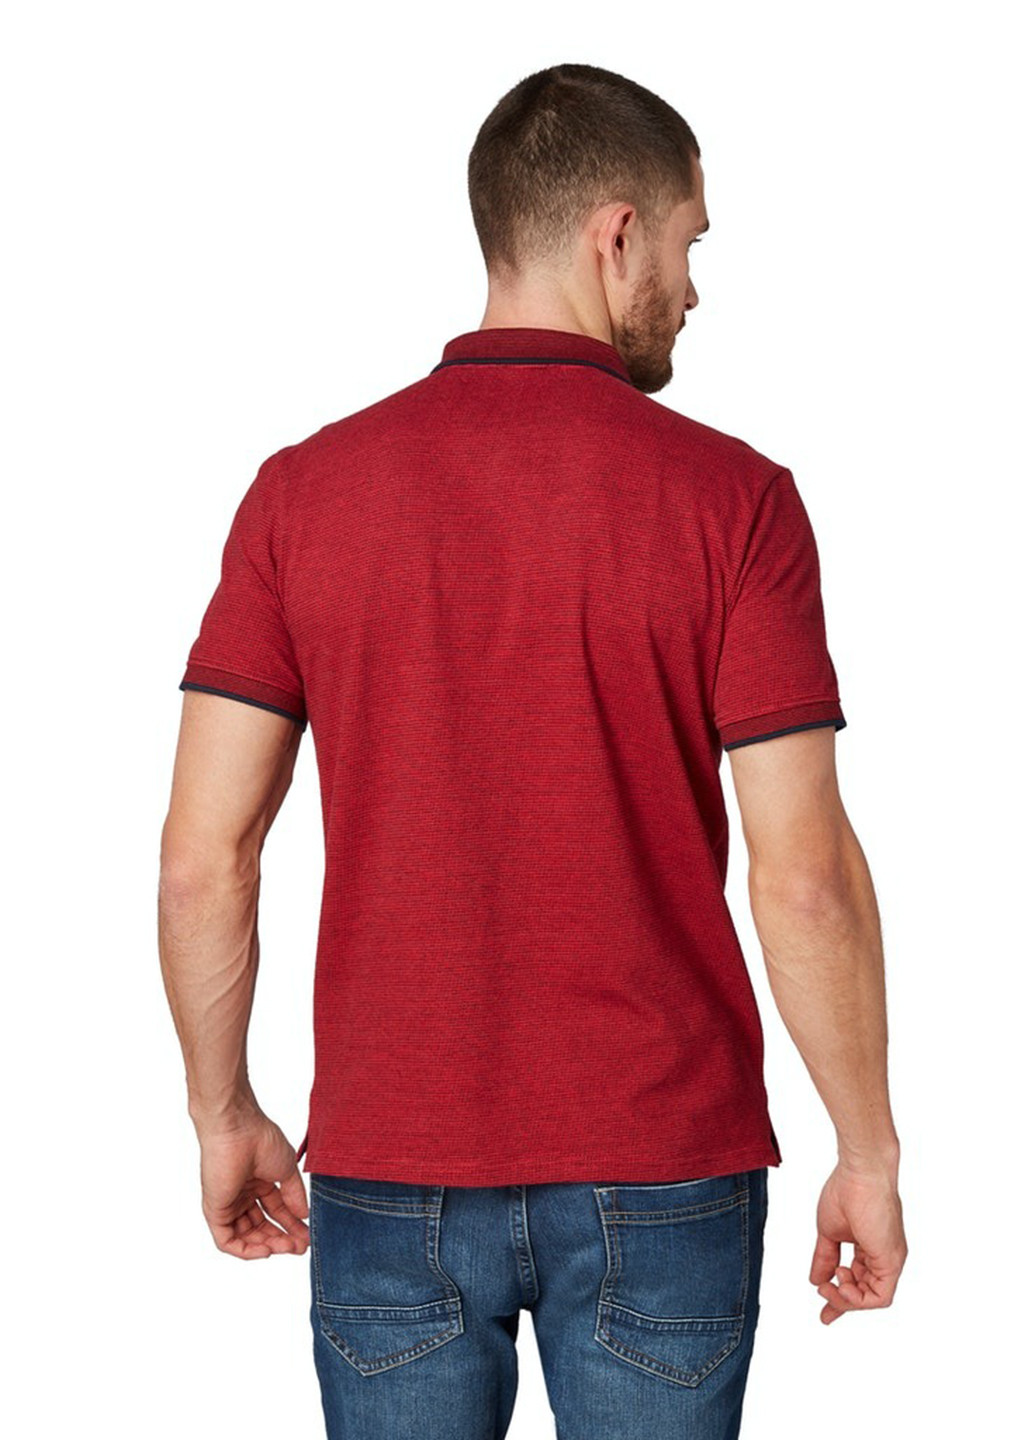 Бордовая футболка-поло для мужчин Tom Tailor меланжевая